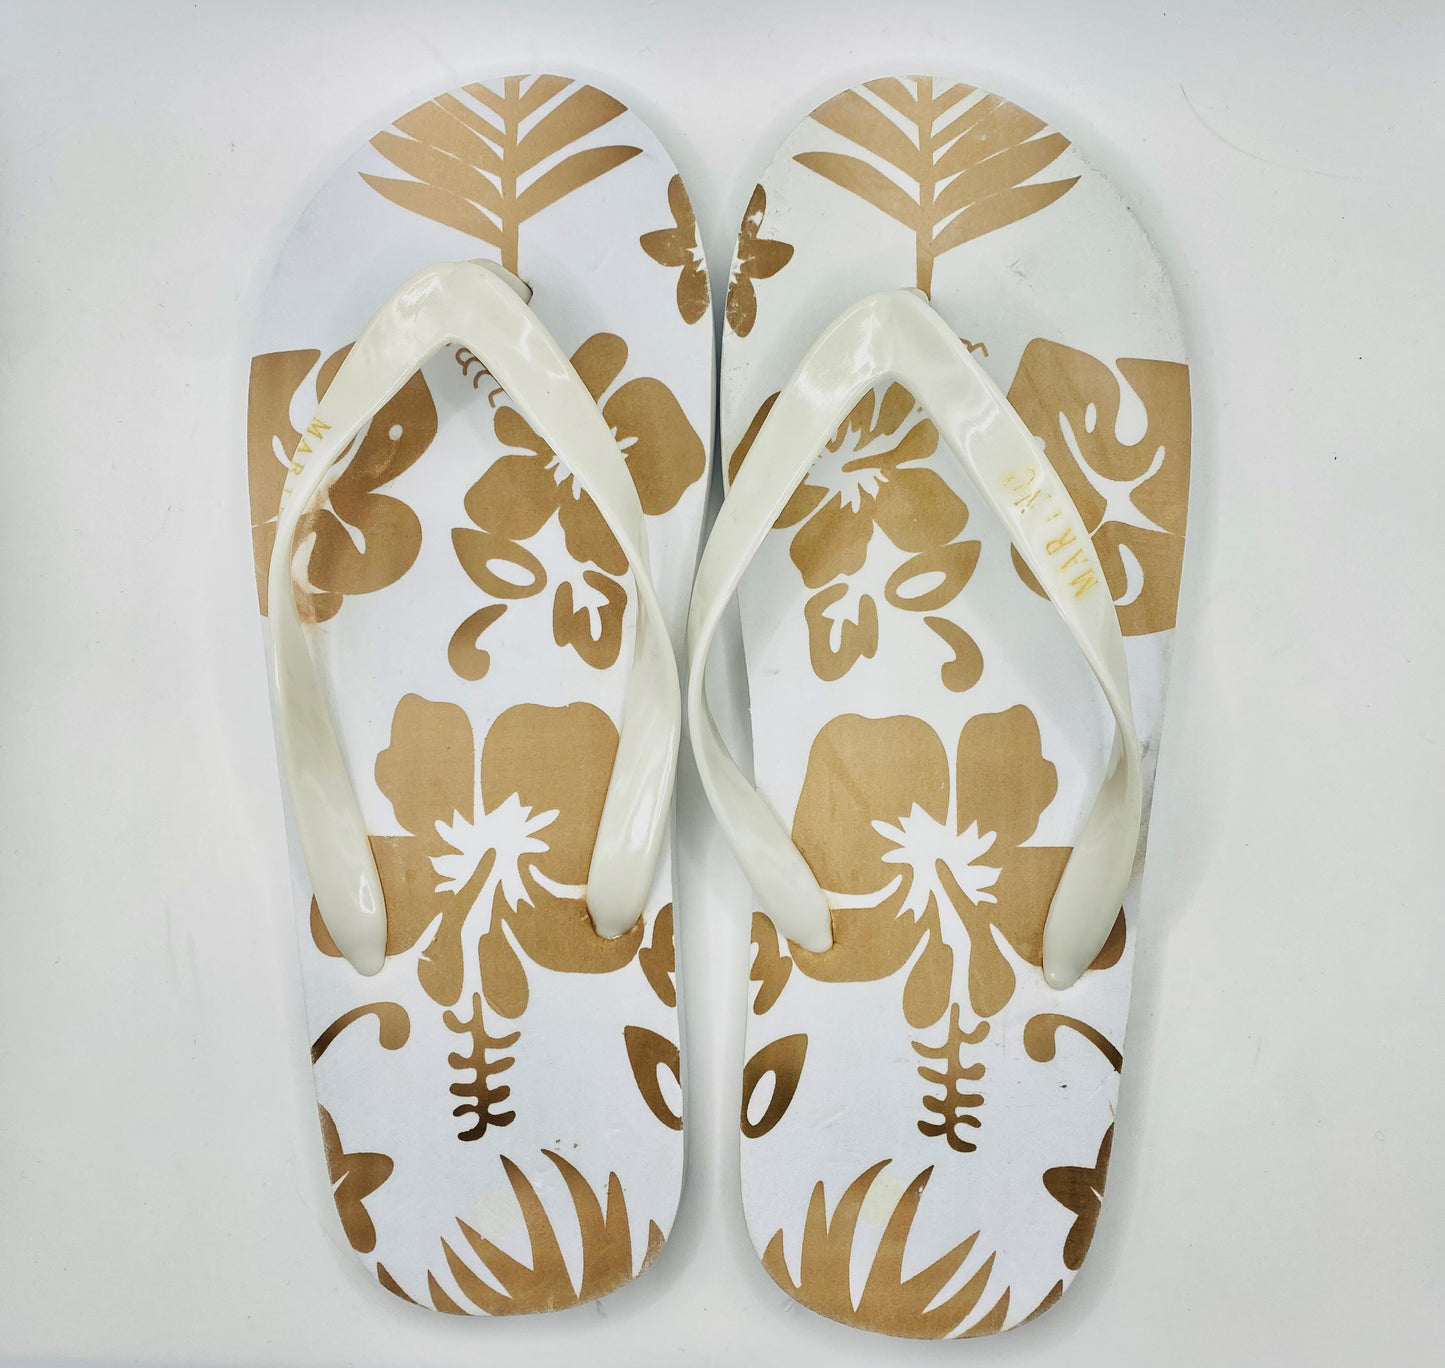 Easy Men's Hawaiian Print Flip Flop Sandals